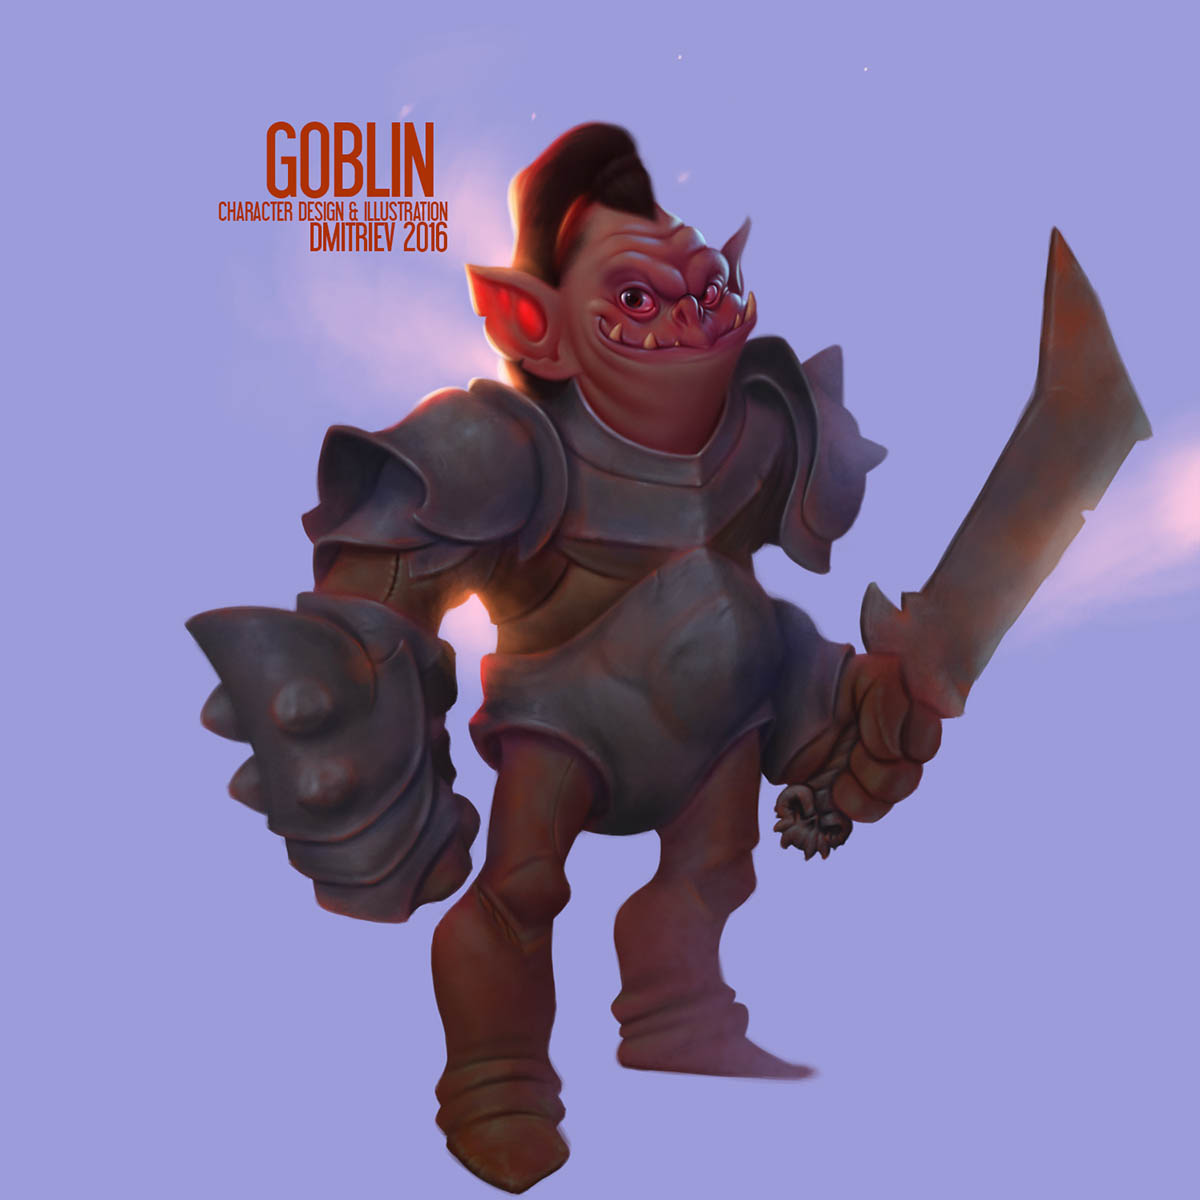 goblin character design by dmitry dmitriev